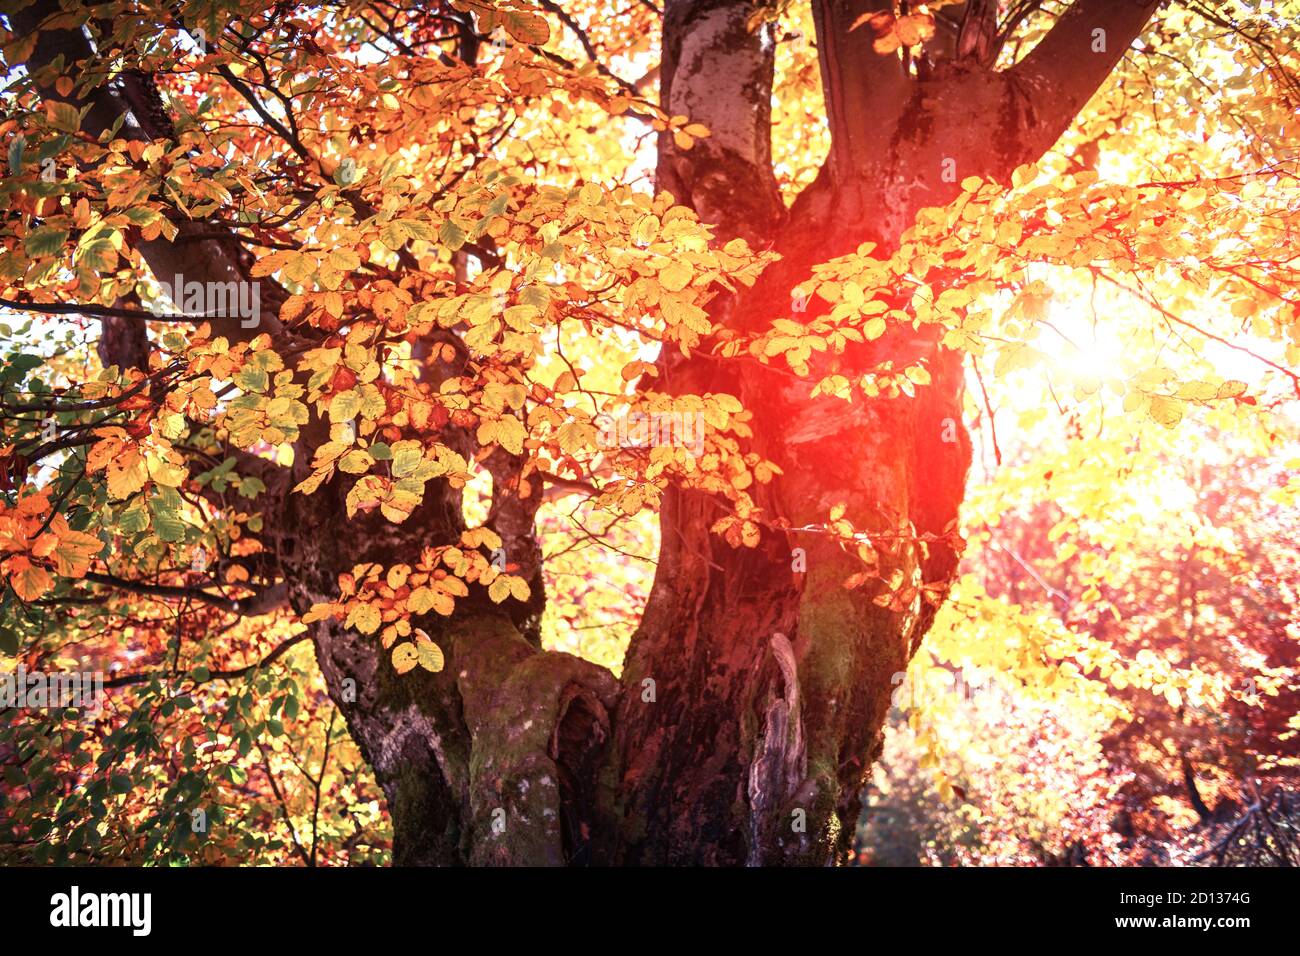 Maestoso vecchio albero di faggio con folliage giallo e arancio nella foresta d'autunno. Pittoresca scena autunnale in Carpazi, Ucraina. Fotografia di paesaggio Foto Stock